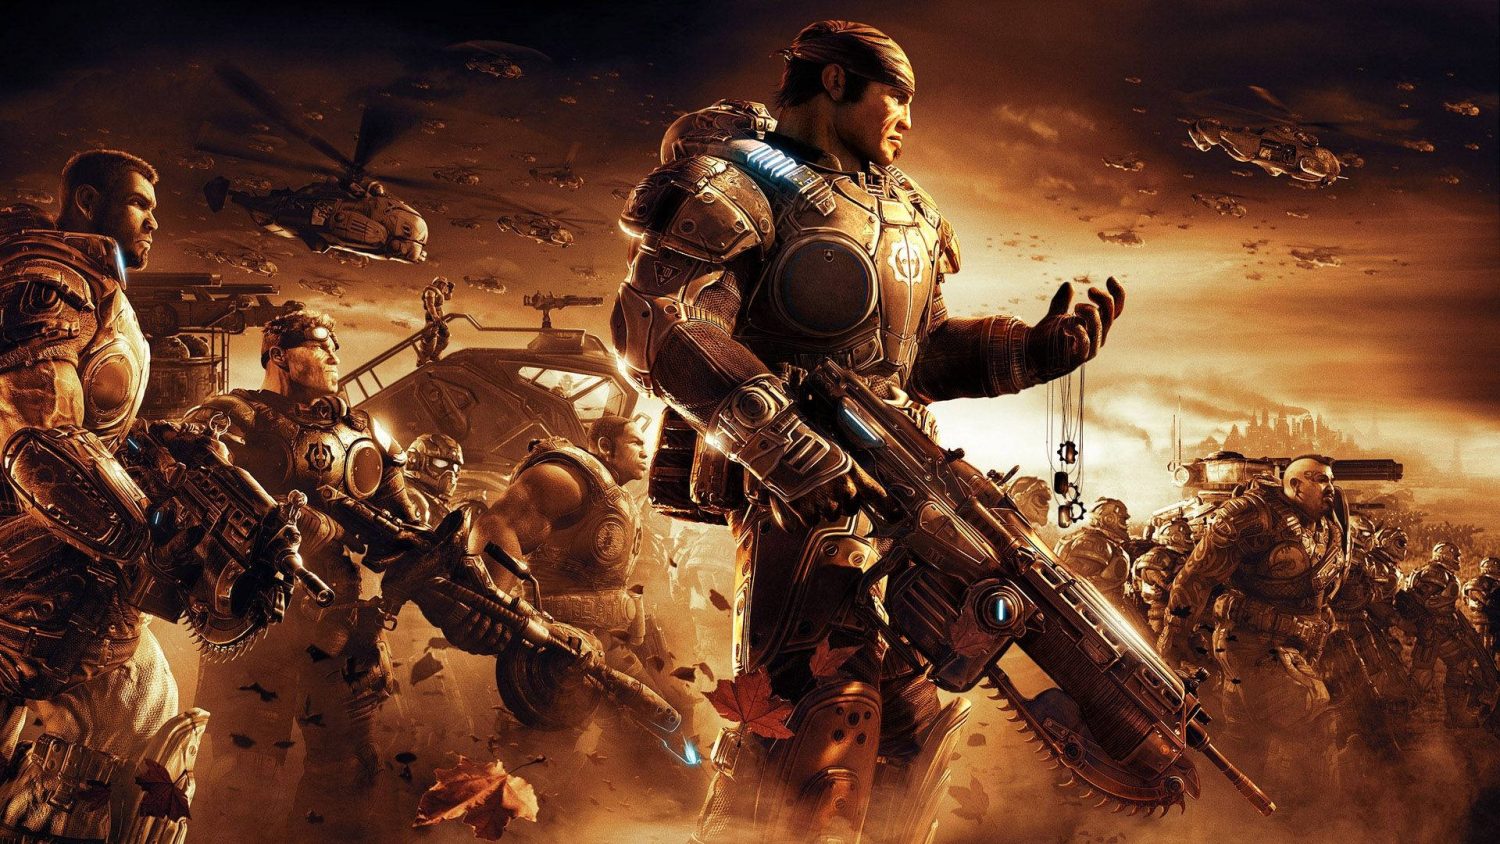 Epic Games parabeniza The Coalition por usar a Unreal Engine 5 no Gears of War E-Day